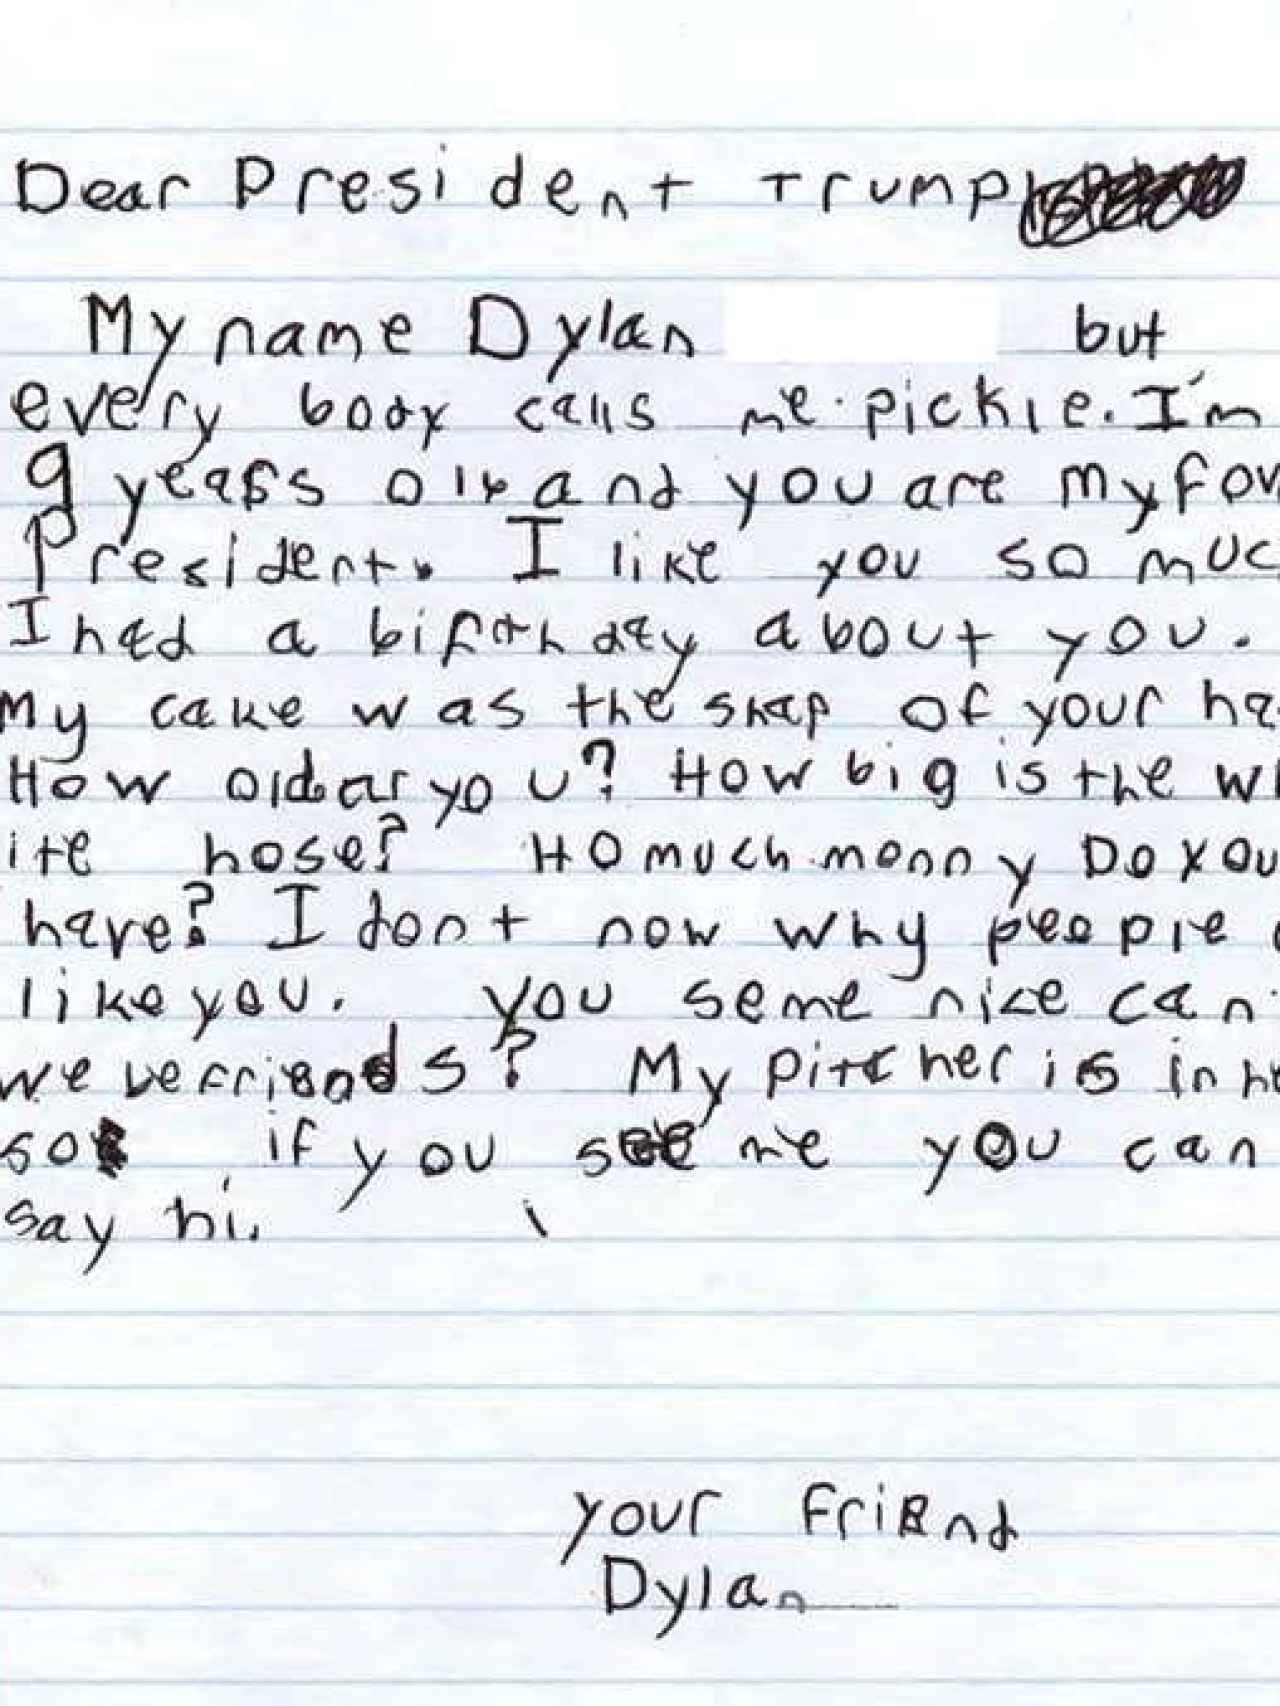 La carta de Dylan para Trump